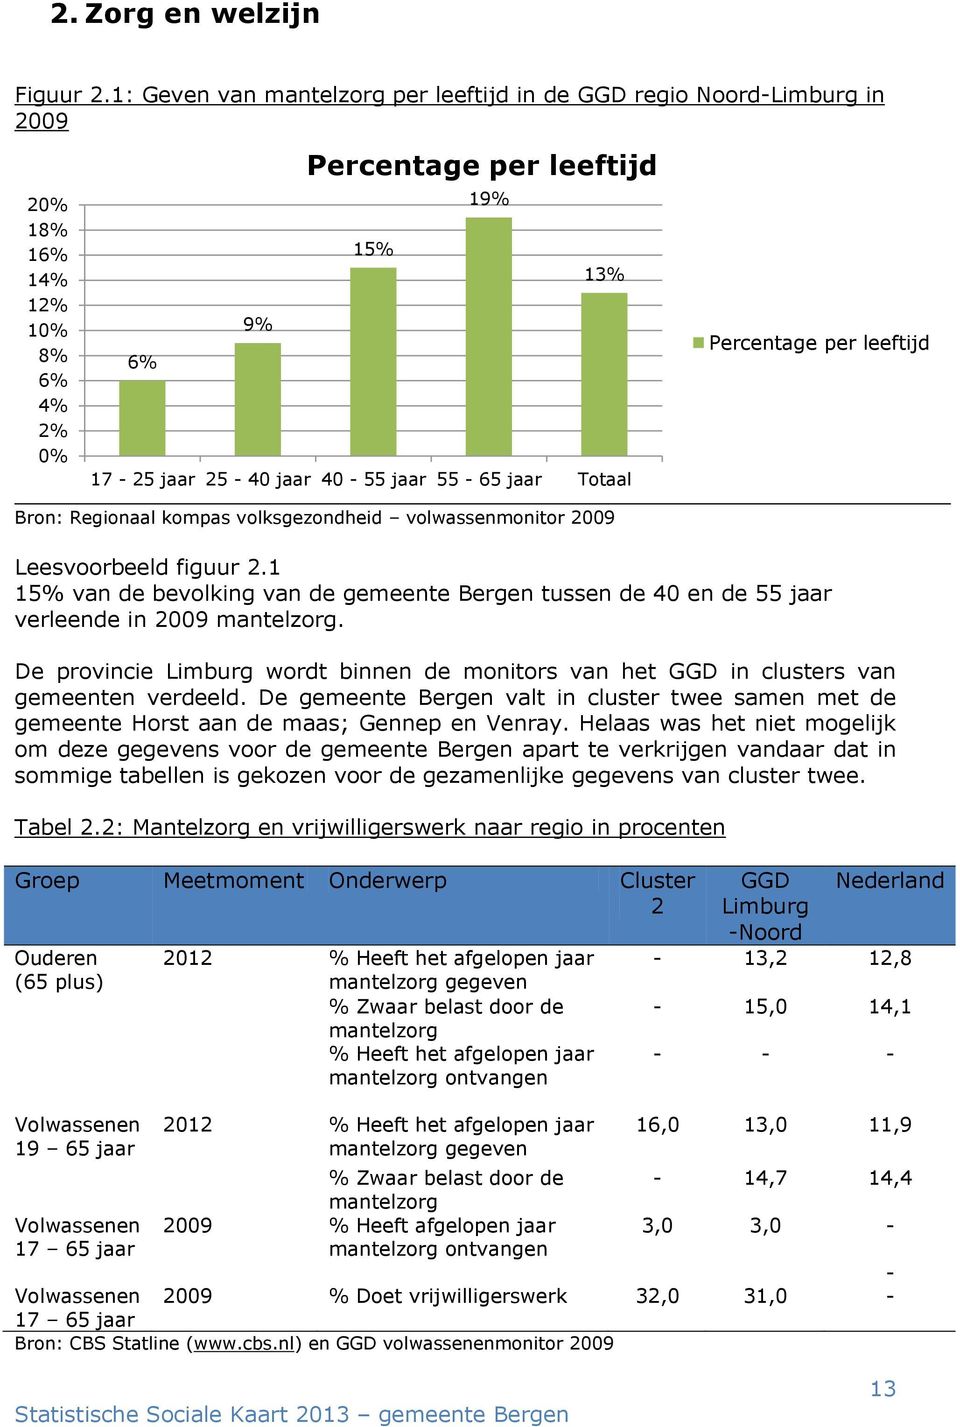 1 15% van de bevolking van de gemeente Bergen tussen de 40 en de 55 jaar verleende in 2009 mantelzorg. De provincie Limburg wordt binnen de monitors van het GGD in clusters van gemeenten verdeeld.